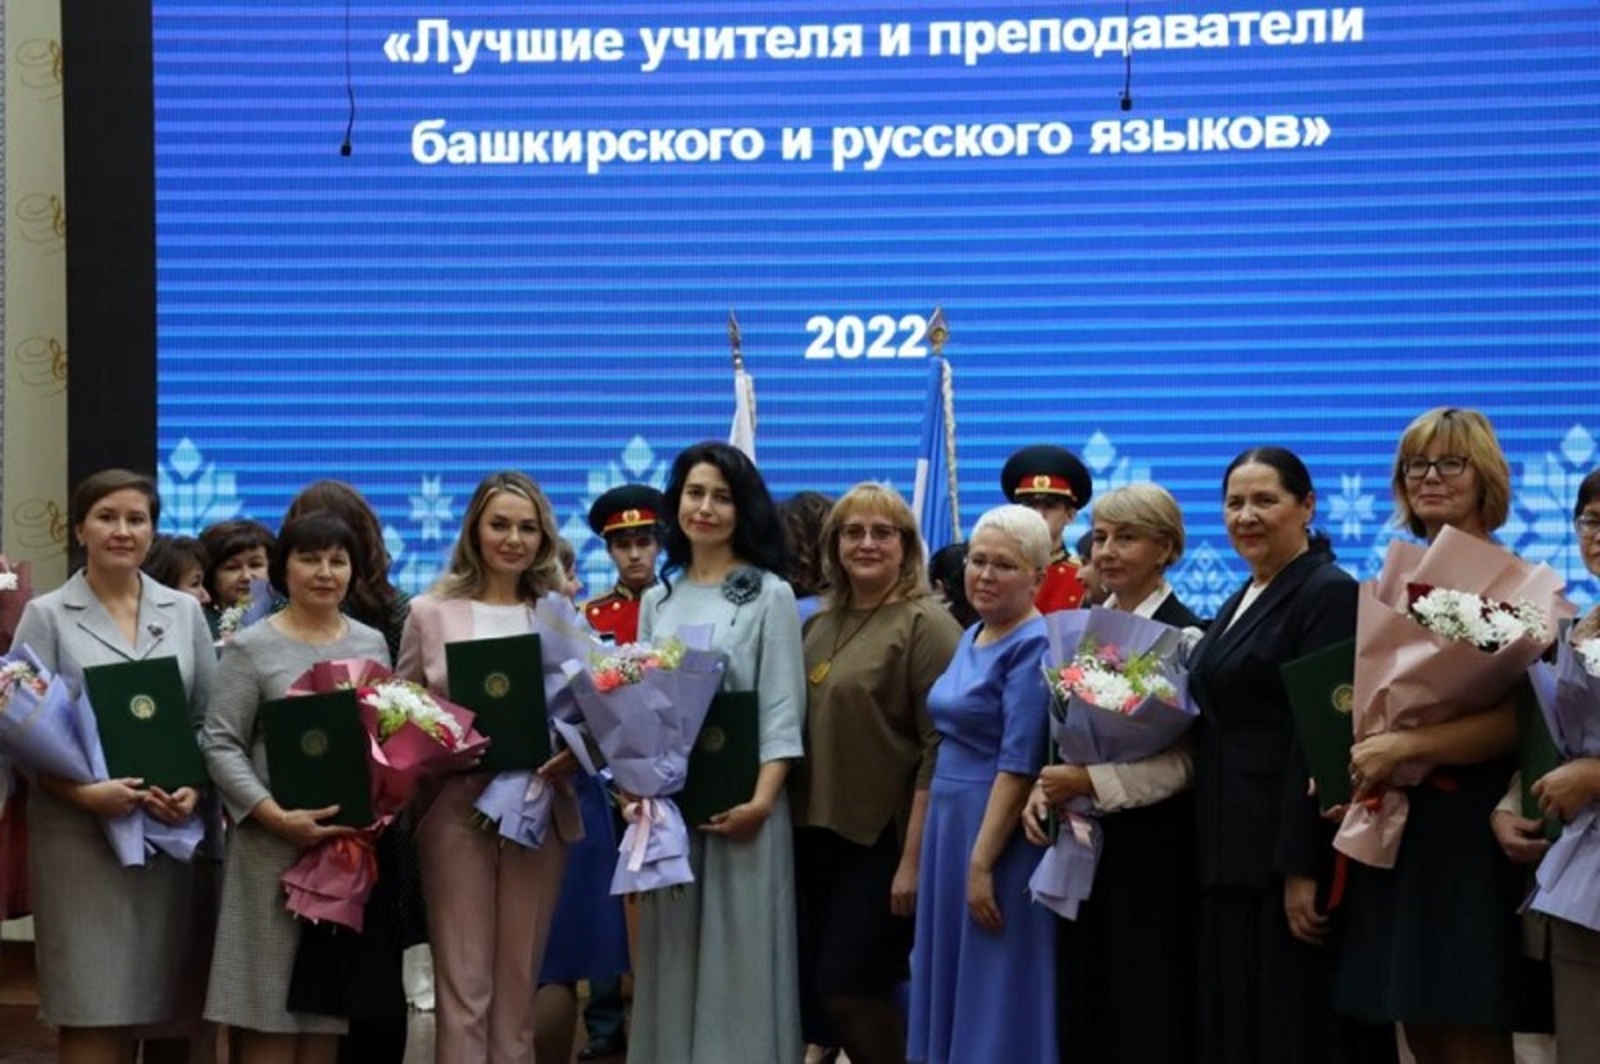 В Уфе поздравили лучших учителей башкирского и русского языков